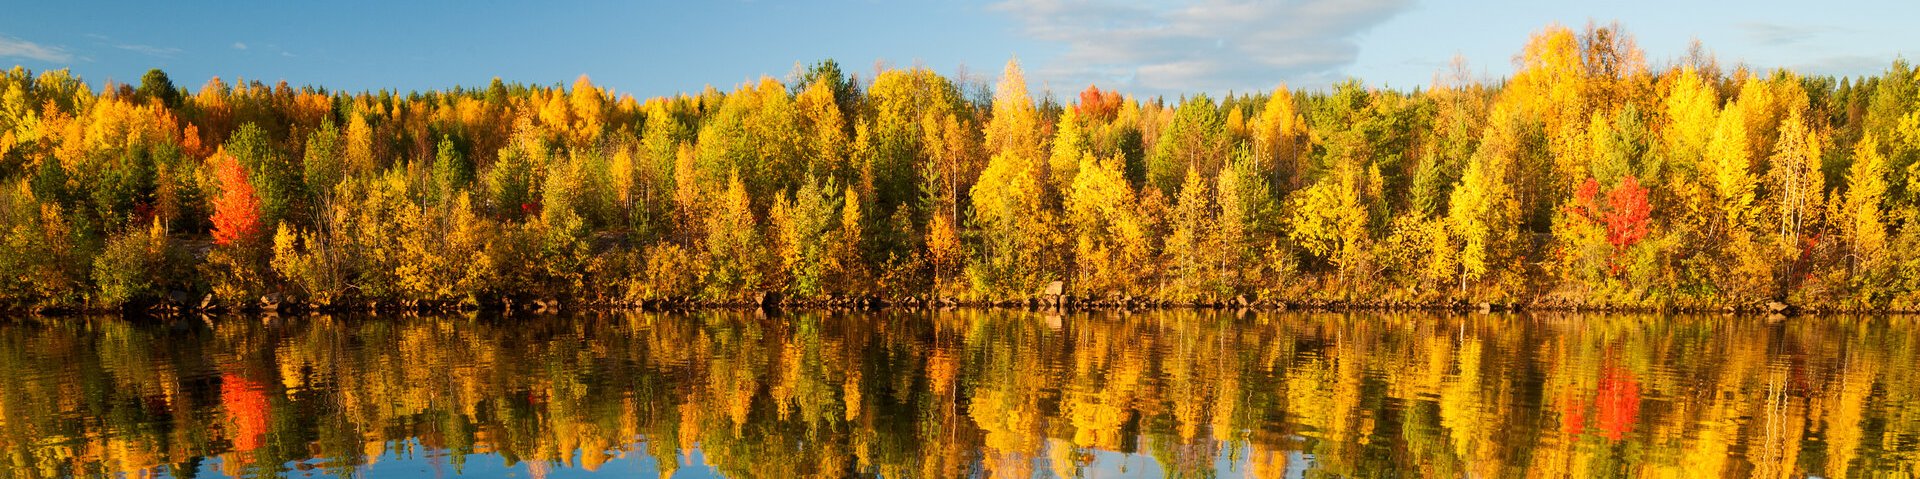 Farbenfroher Herbstwald an einem See in Lappland